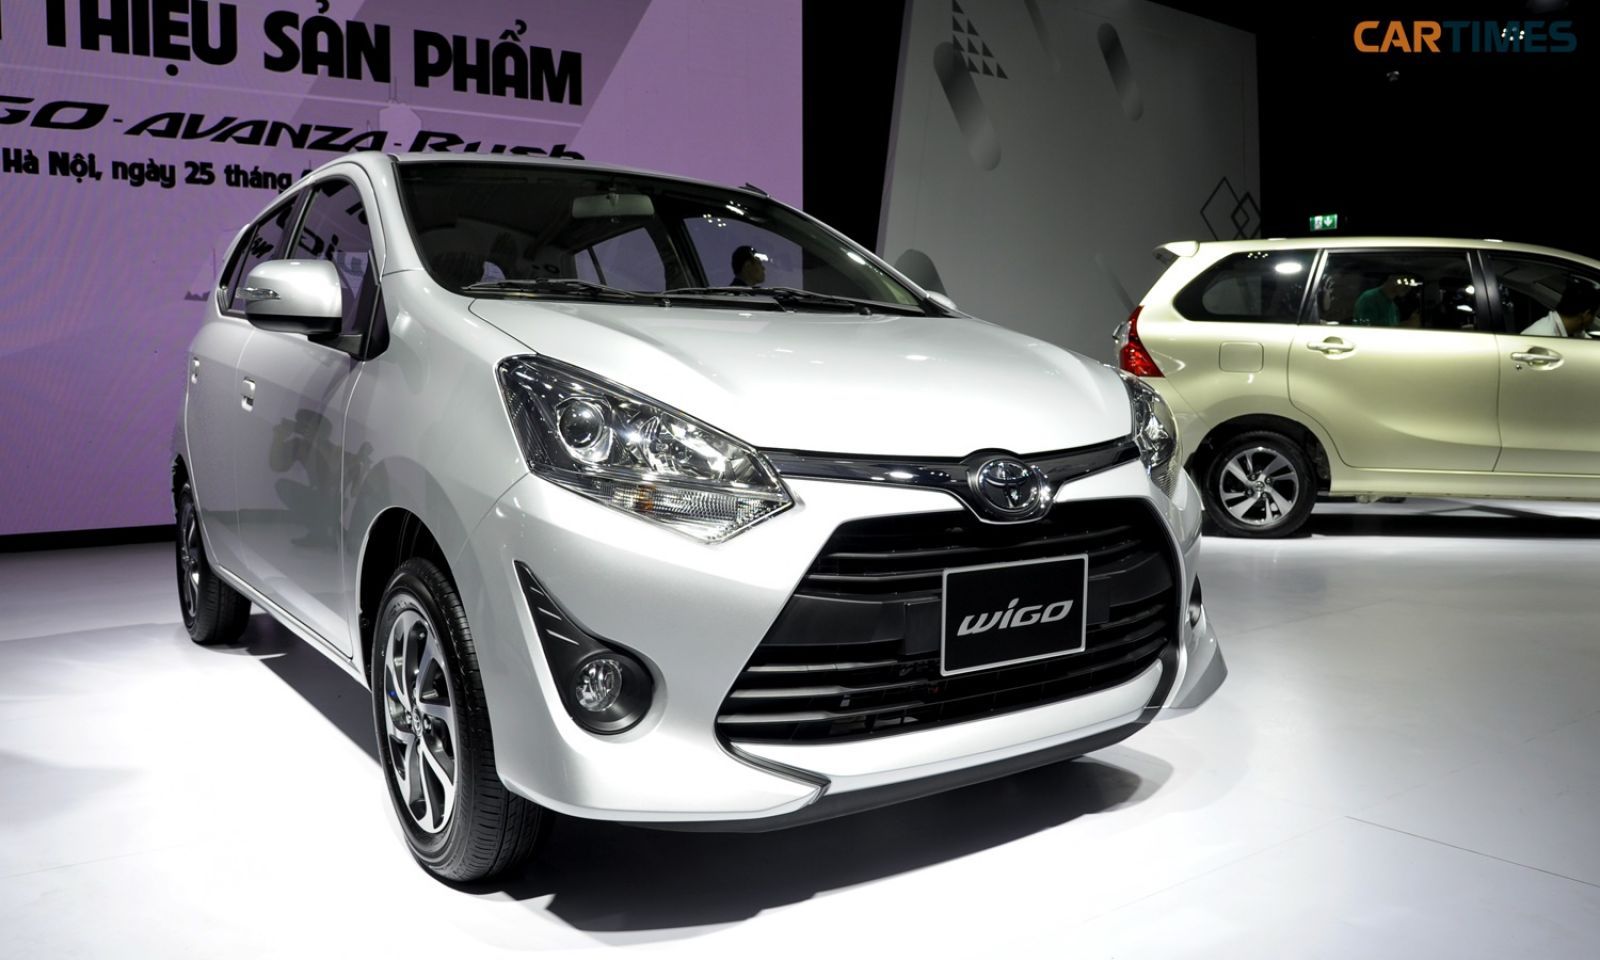 Theo dự báo của Hiệp hội các nhà sản xuất ô tô Việt Nam (VAMA), lượng tiêu thụ ô tô trong năm 2020 có thể sụt giảm hơn 15% so với dự kiến trước đây của Hiệp hội.